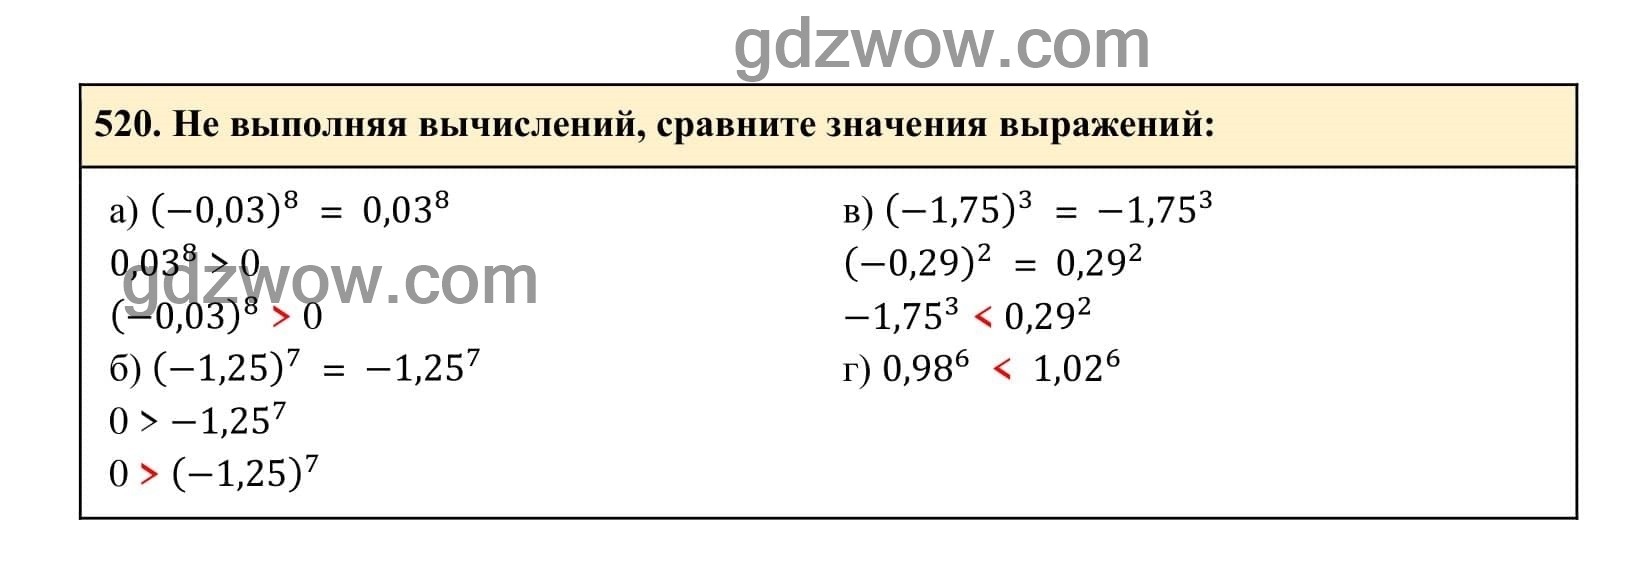 Упражнение 520 - ГДЗ по Алгебре 7 класс Учебник Макарычев (решебник) - GDZwow